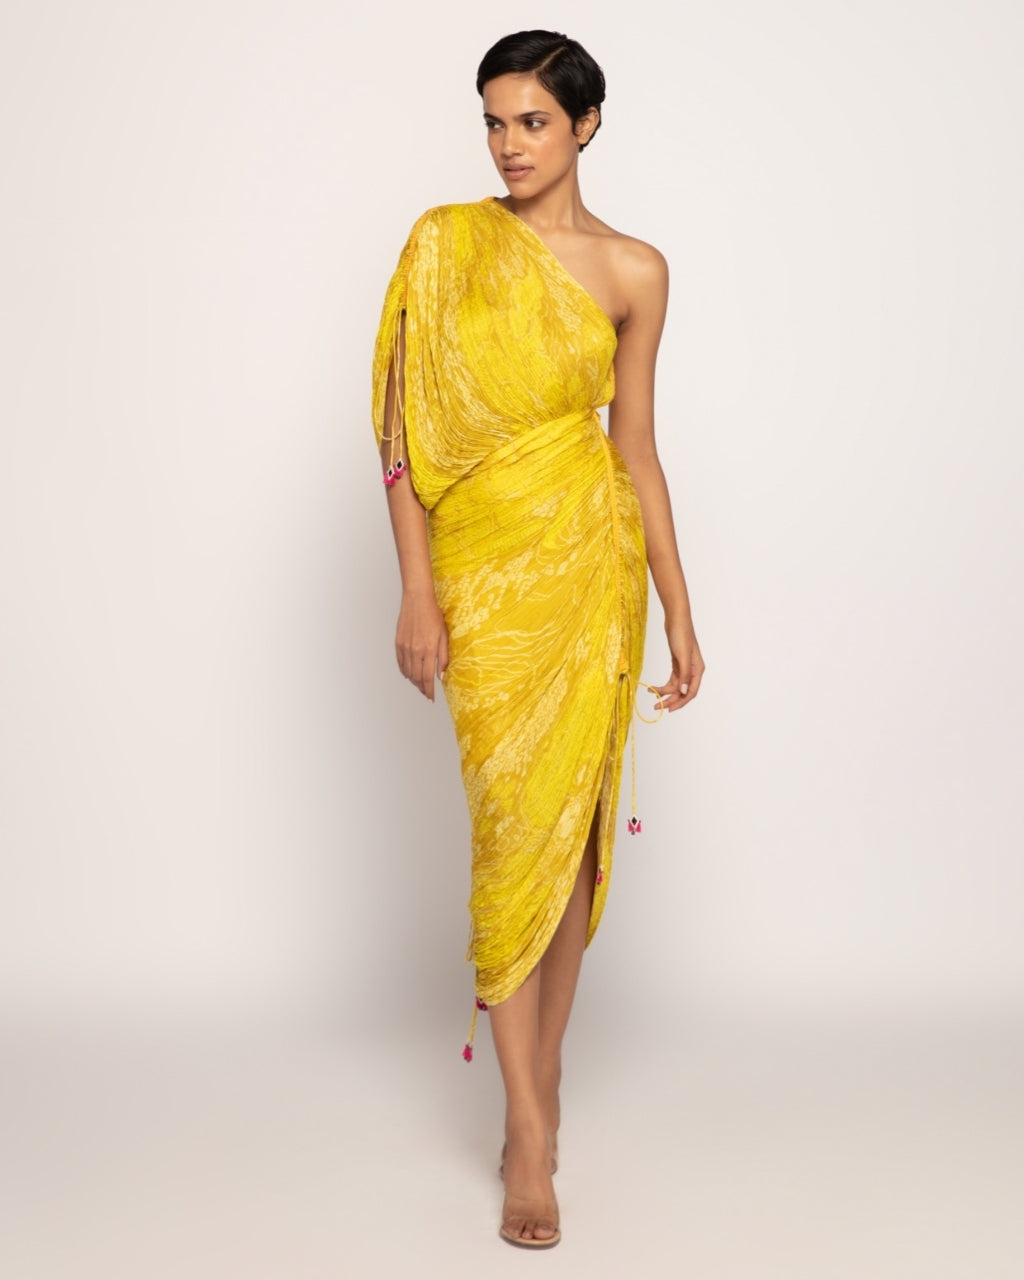 Hanout Sari Dress